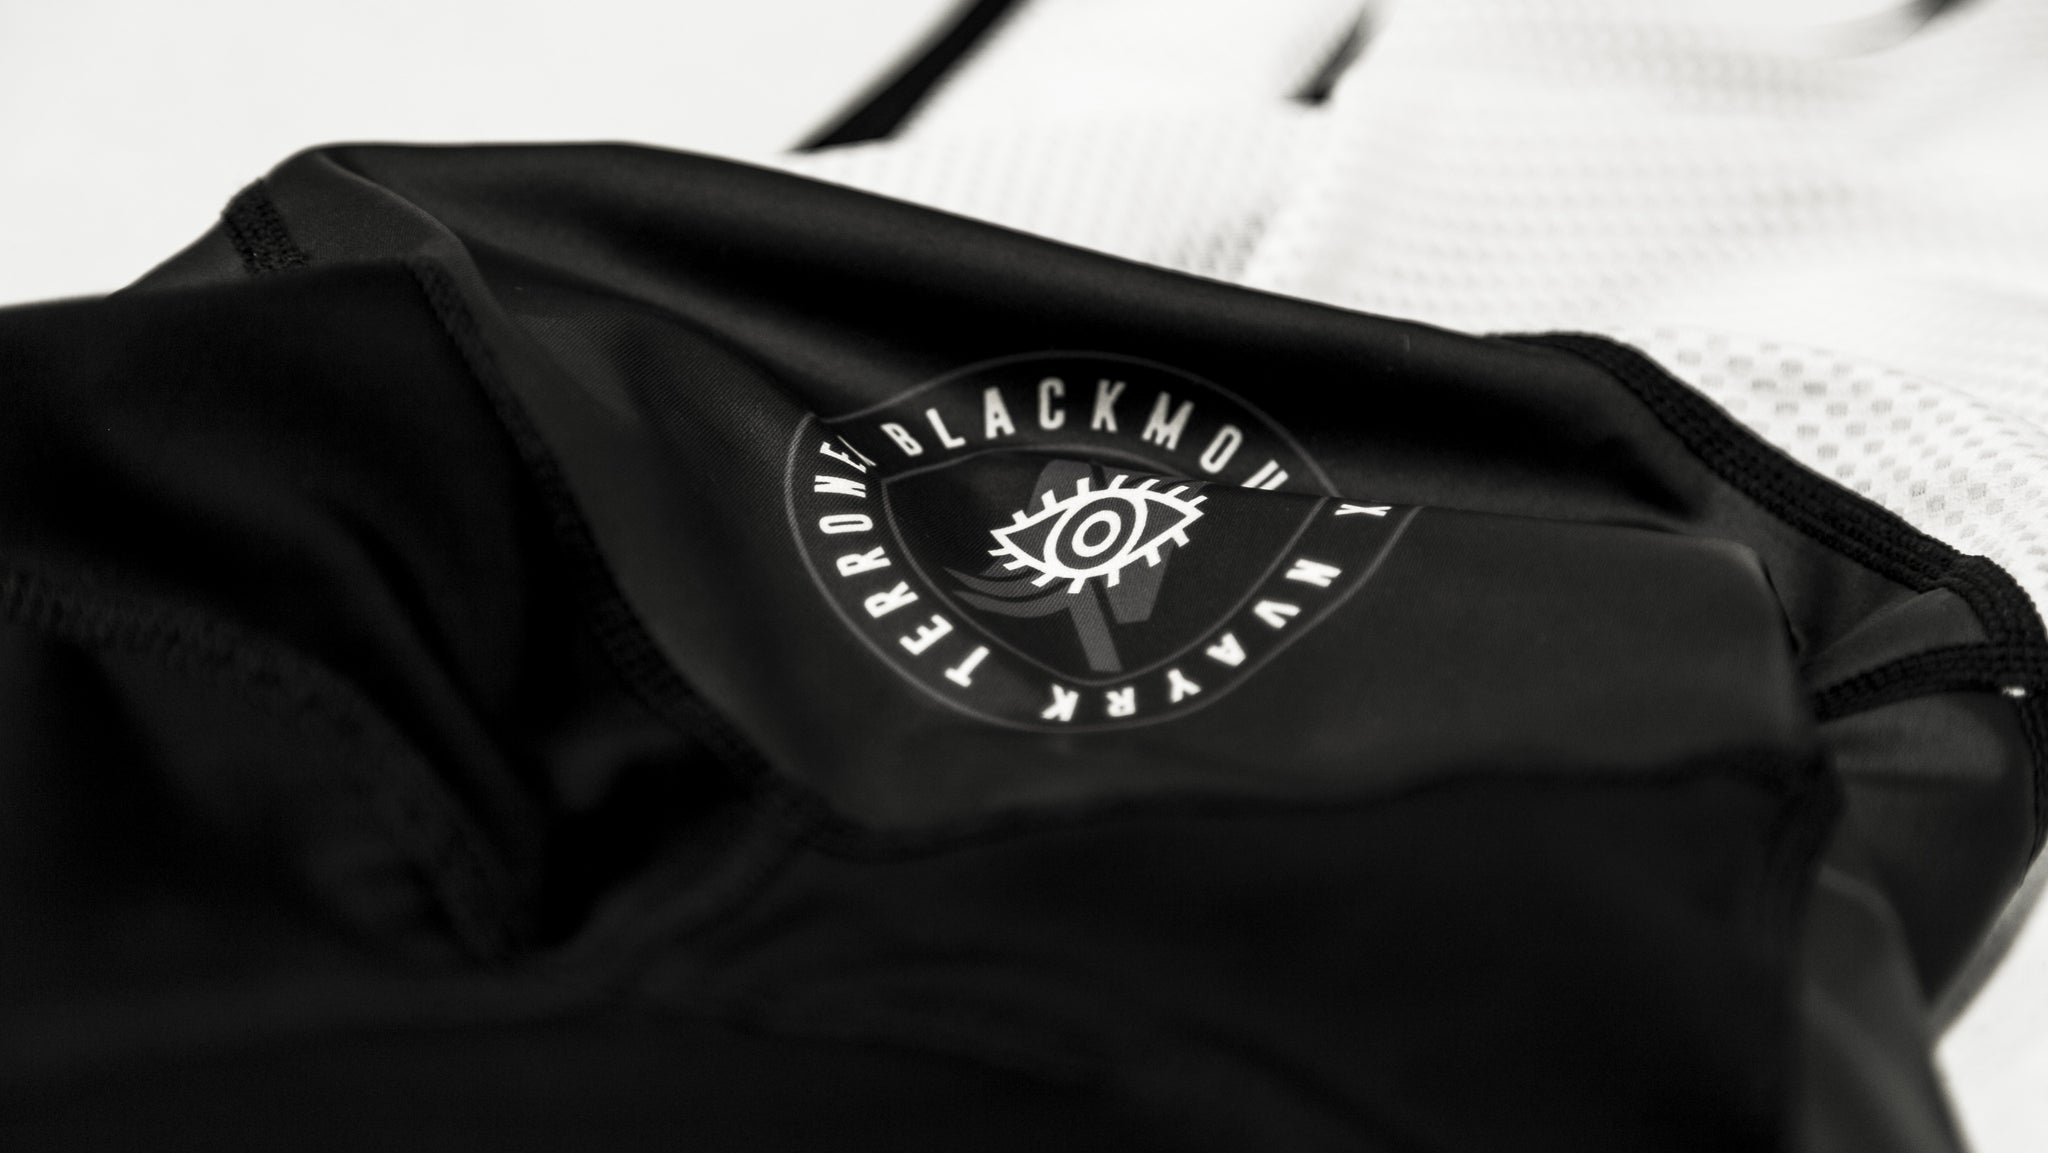 NVAYRK X BLACKMOUTH CO. Cycling Kit